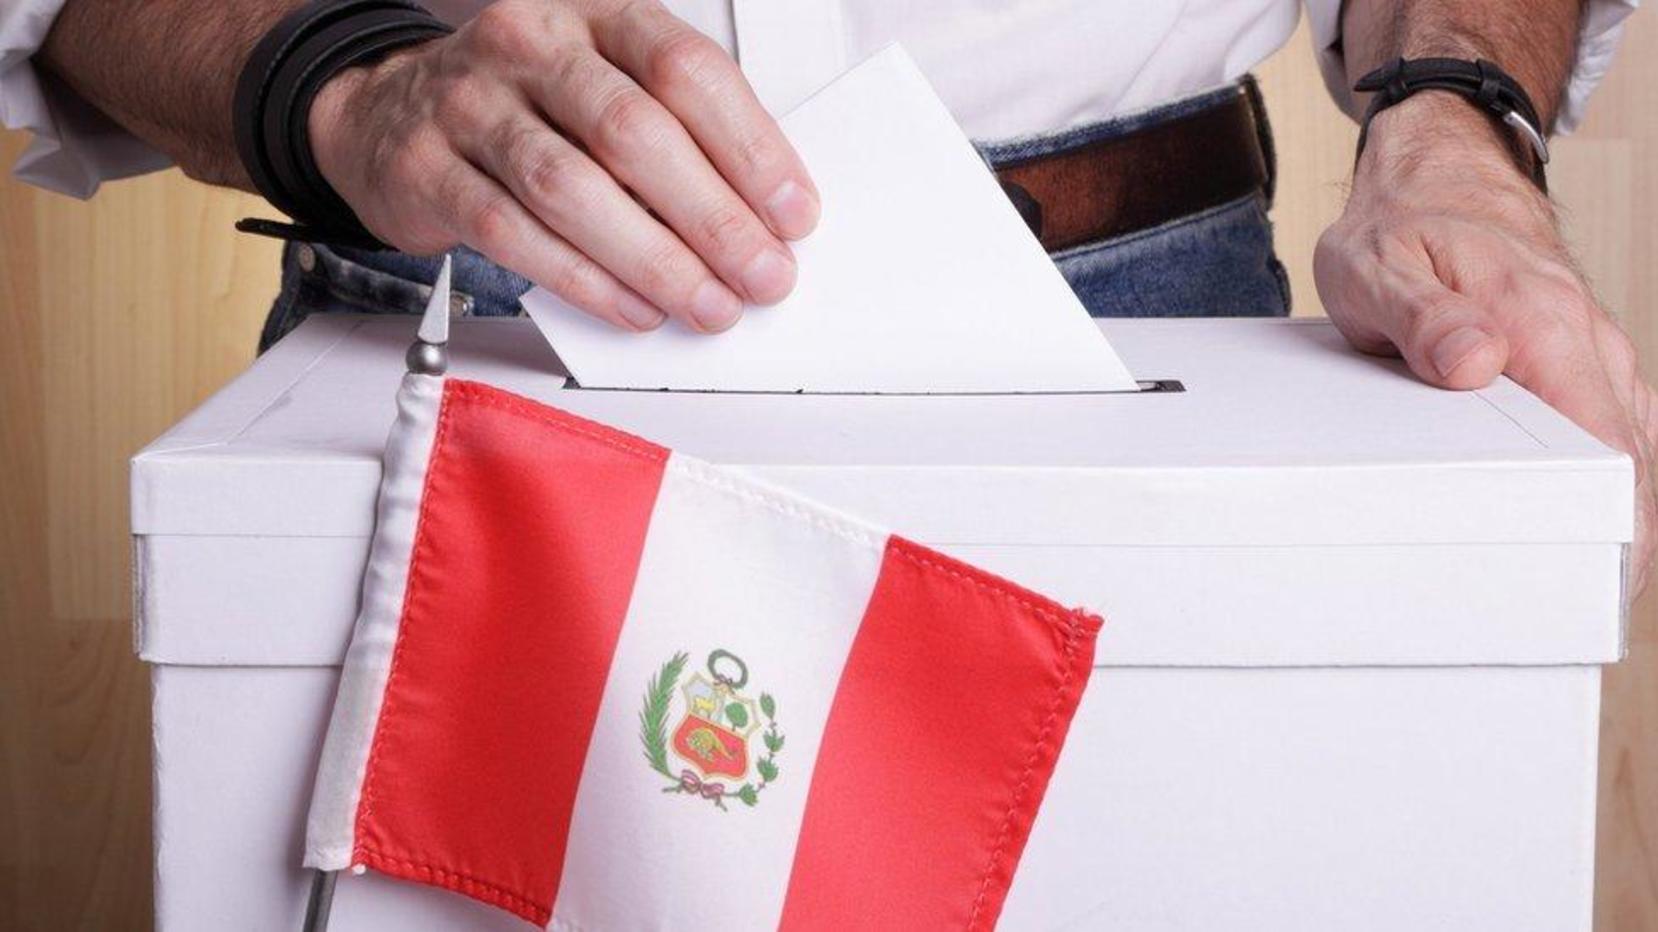 La OEA descartó “graves irregularidades” en elecciones de Perú